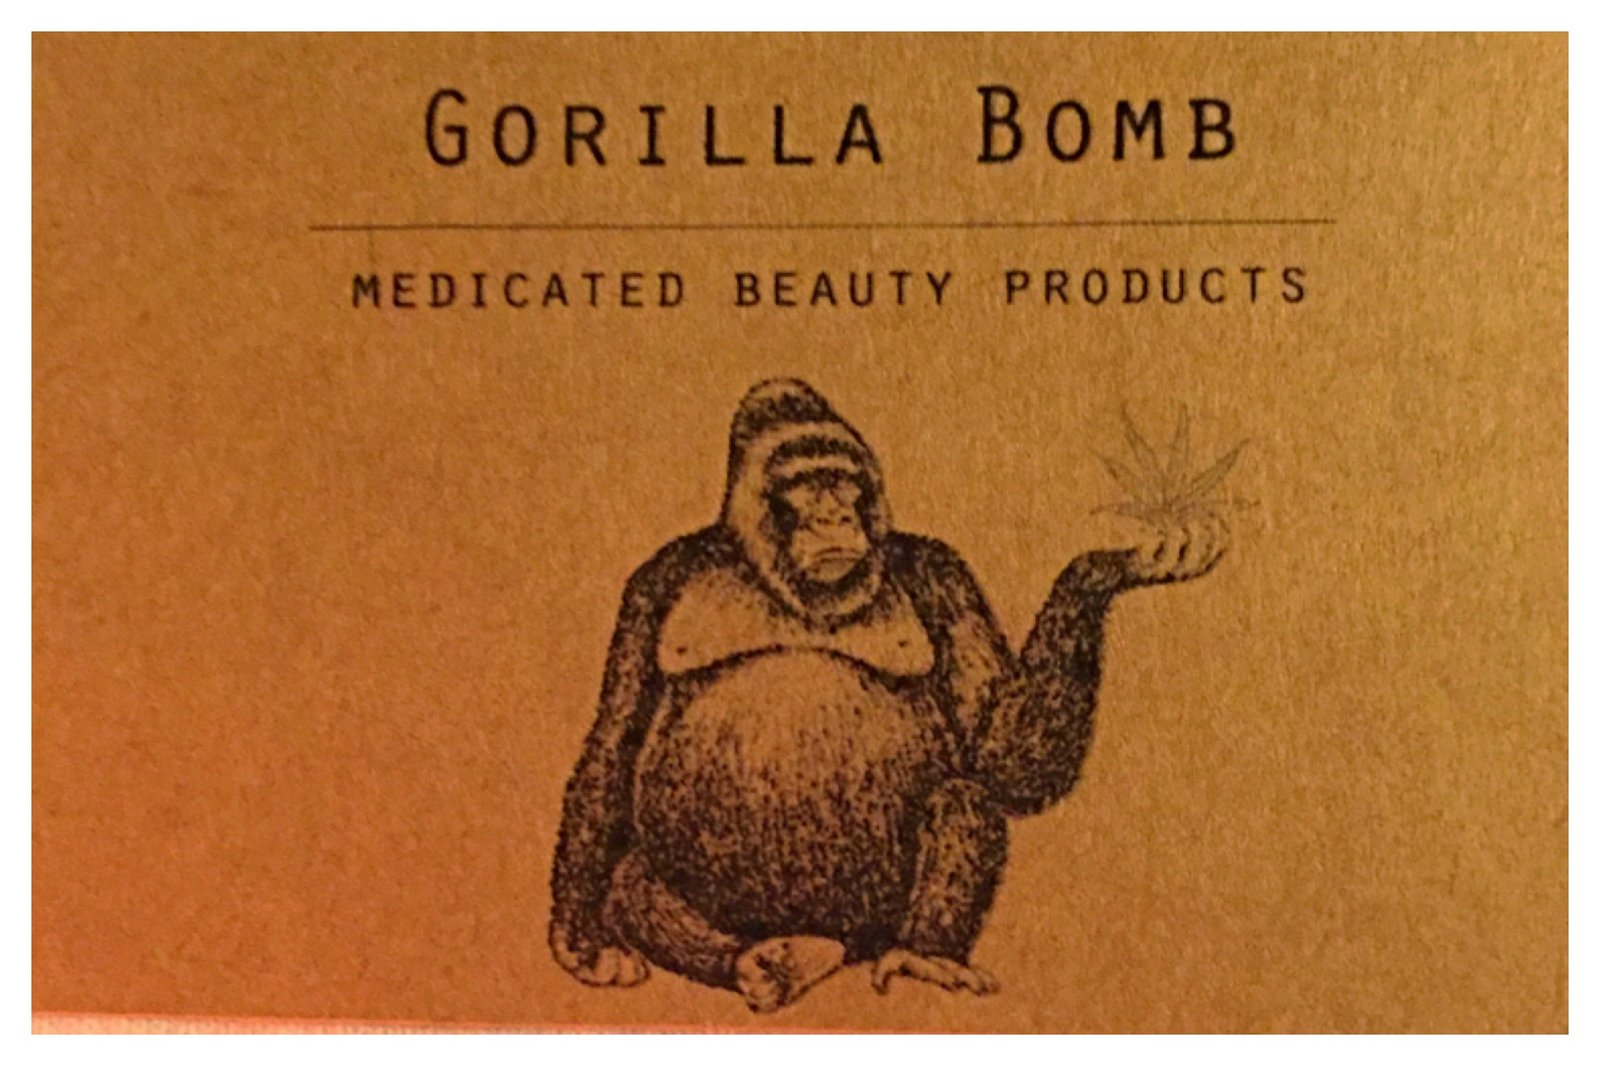 x1440p gorilla images